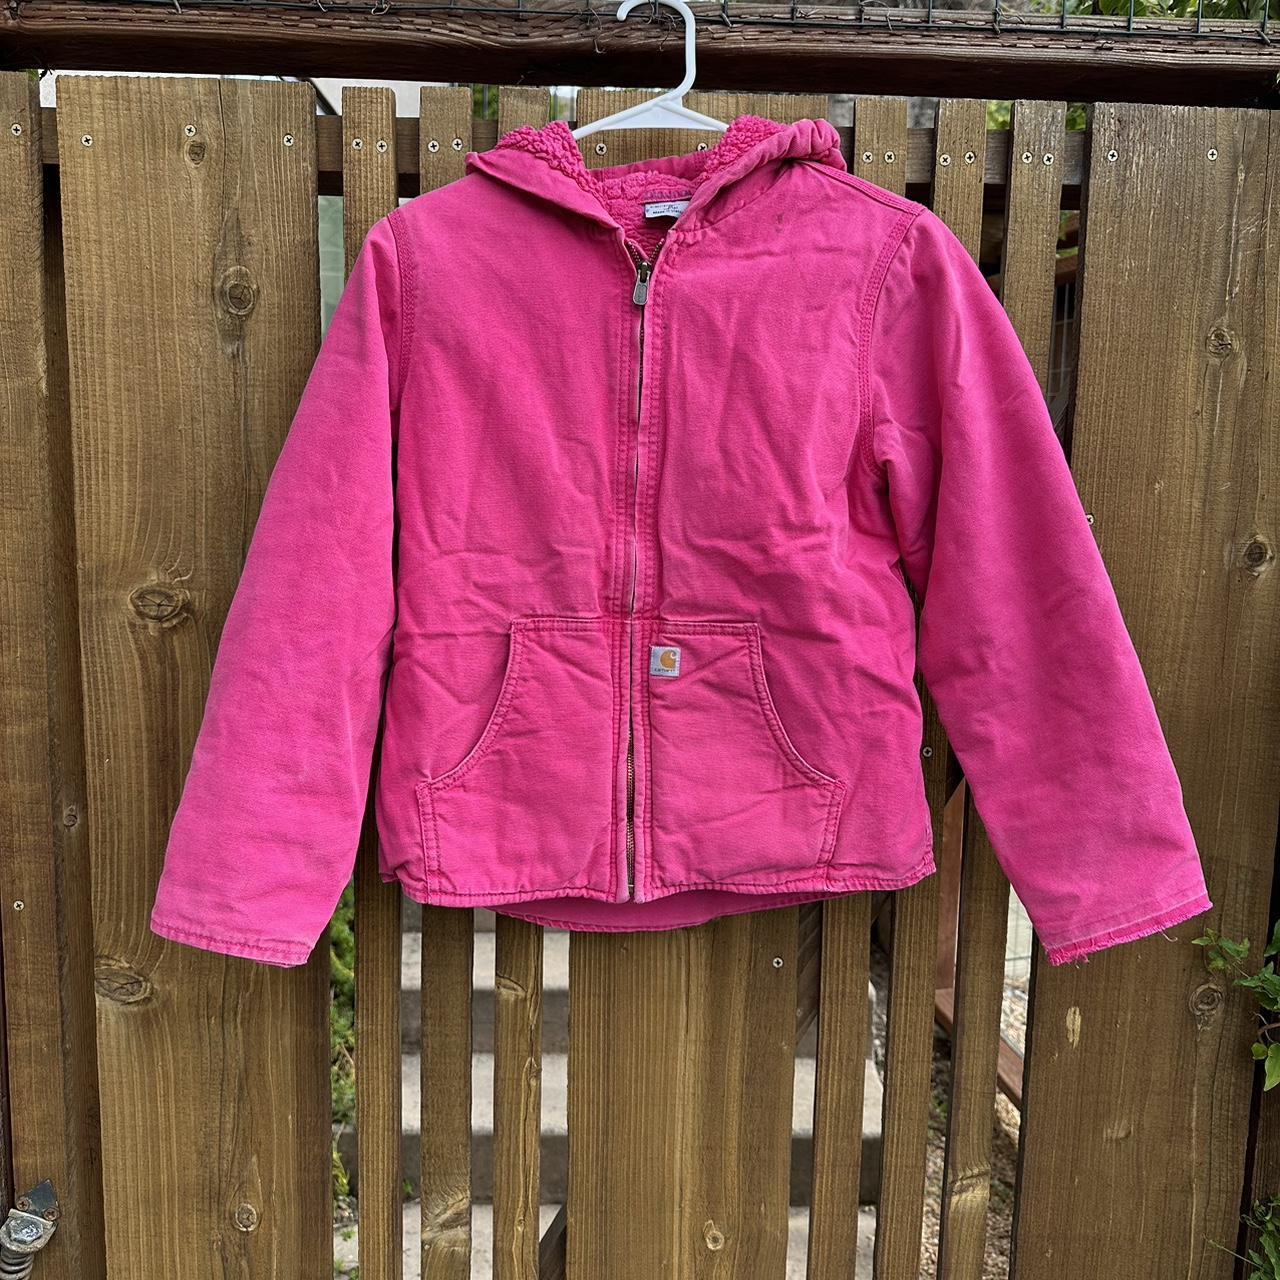 Vintage Pink Carhartt Jacket Rare pink color Size S... - Depop